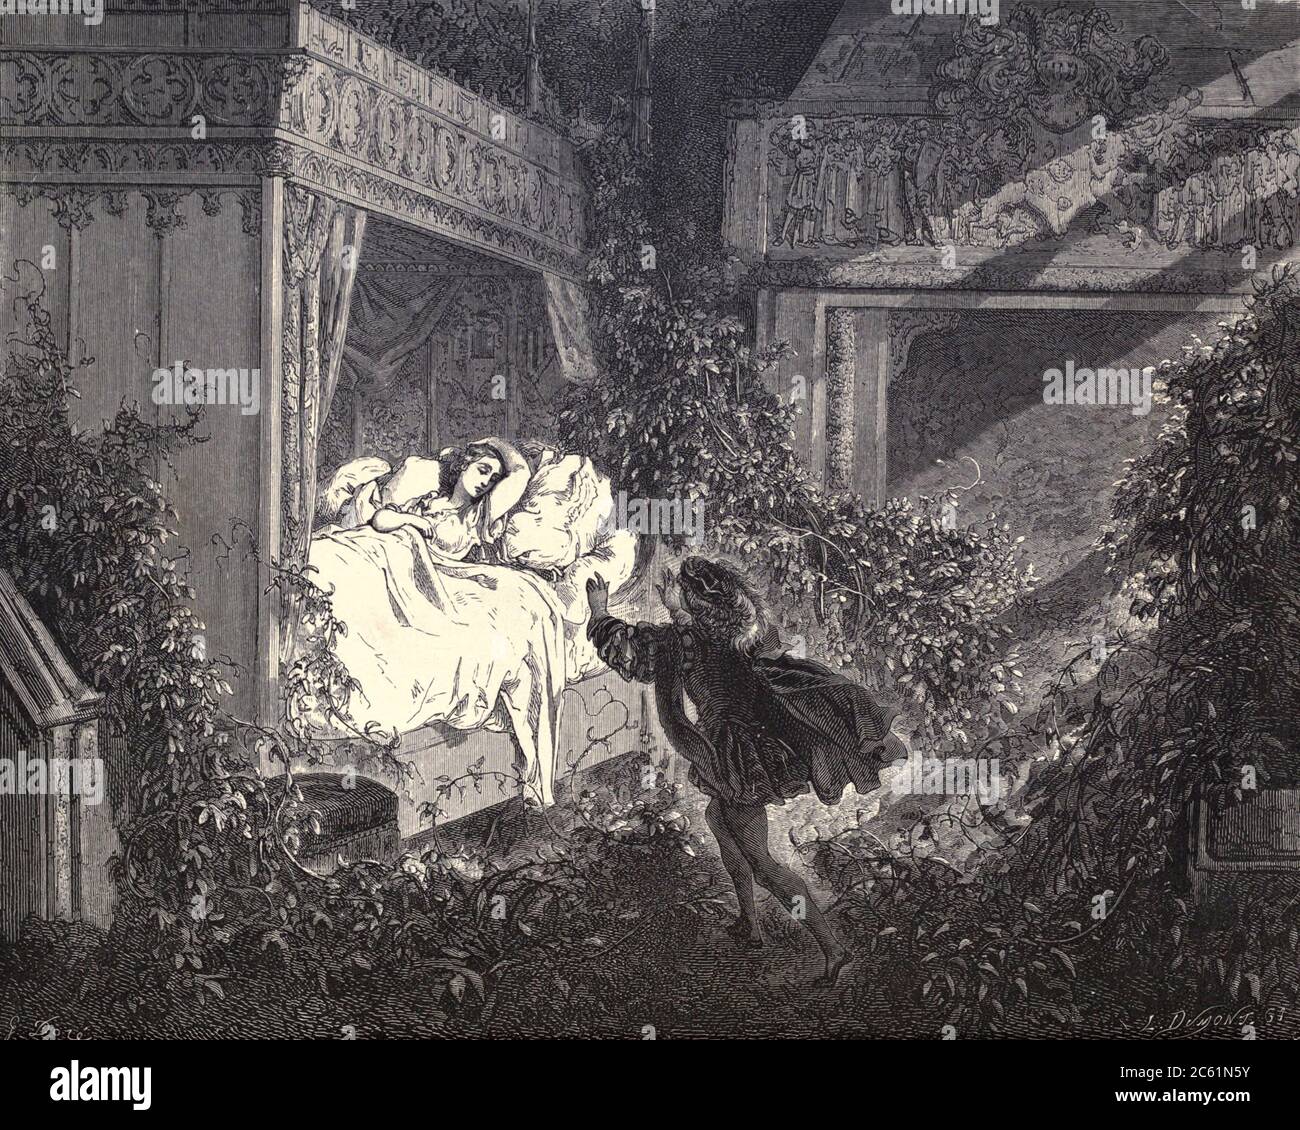 Ogni passo che si avvicinava, si opposì agli occhi della viola". Illustrazione di ‘la bellezza addormentata’ di Paul Gustave Doré (1832-1883). Il principe circa risvegliare la principessa dal suo sonno 100 anni con un bacio. Dal regno fata del libro. Una raccolta dei vecchi racconti preferiti. Illustrato dalla matita di Gustave Dore di Tom Hood, (1835-1874); Gustave Doré, (1832-1883) pubblicato a Londra da Ward, Lock e Tyler nel 1866 Foto Stock